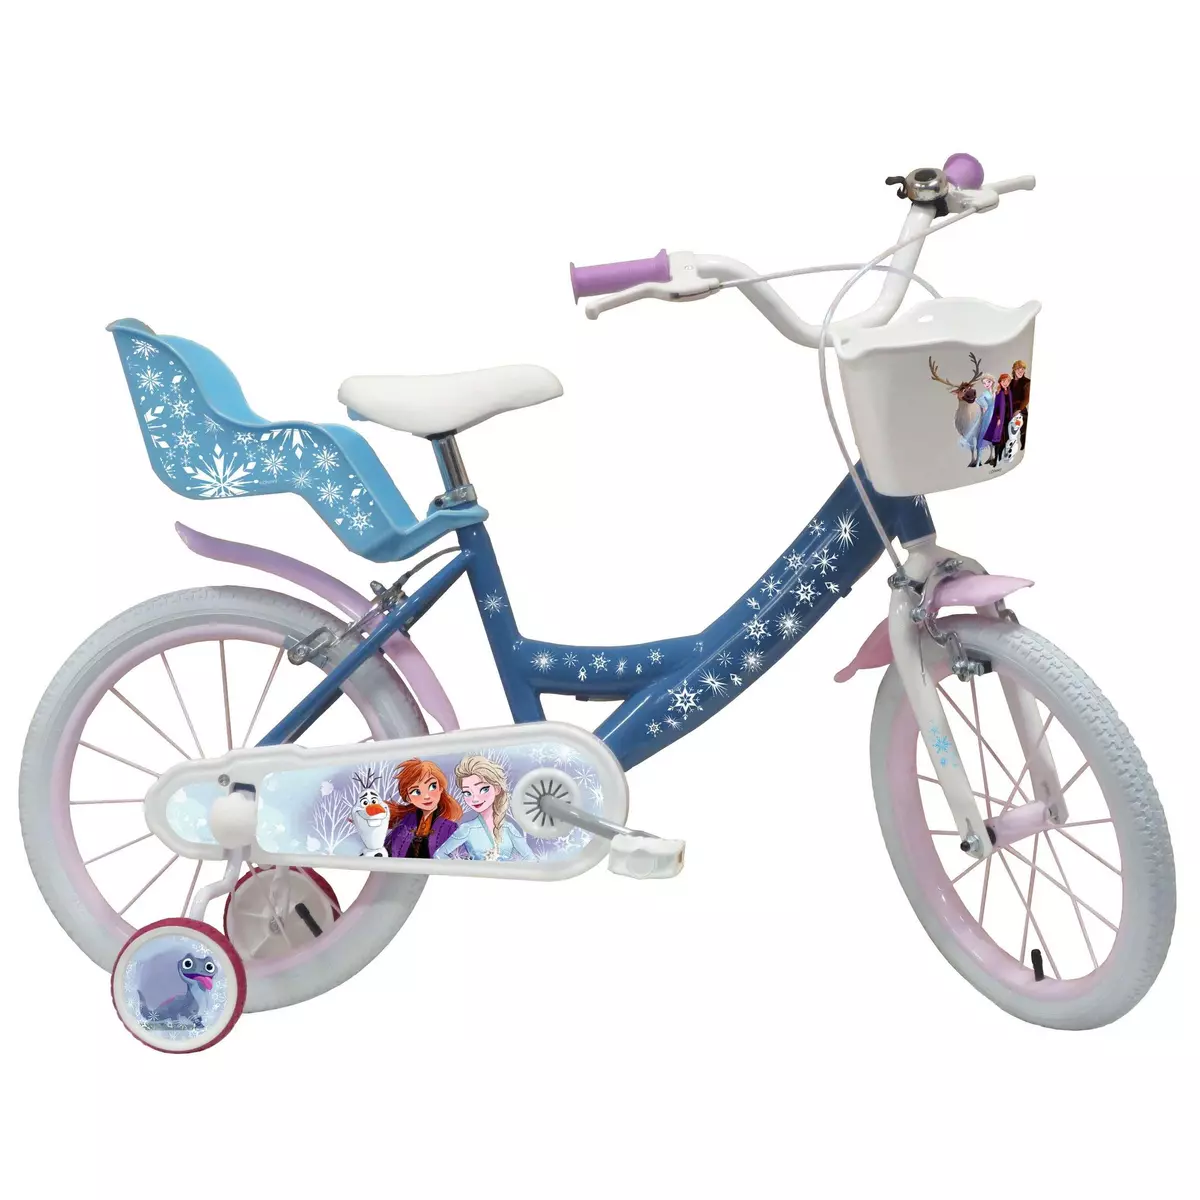 Disney La Reine des Neiges Vélo 16  Fille Licence  Reine des Neiges  pour enfant de 5 à 7 ans avec stabilisateurs à molettes - 2 freins